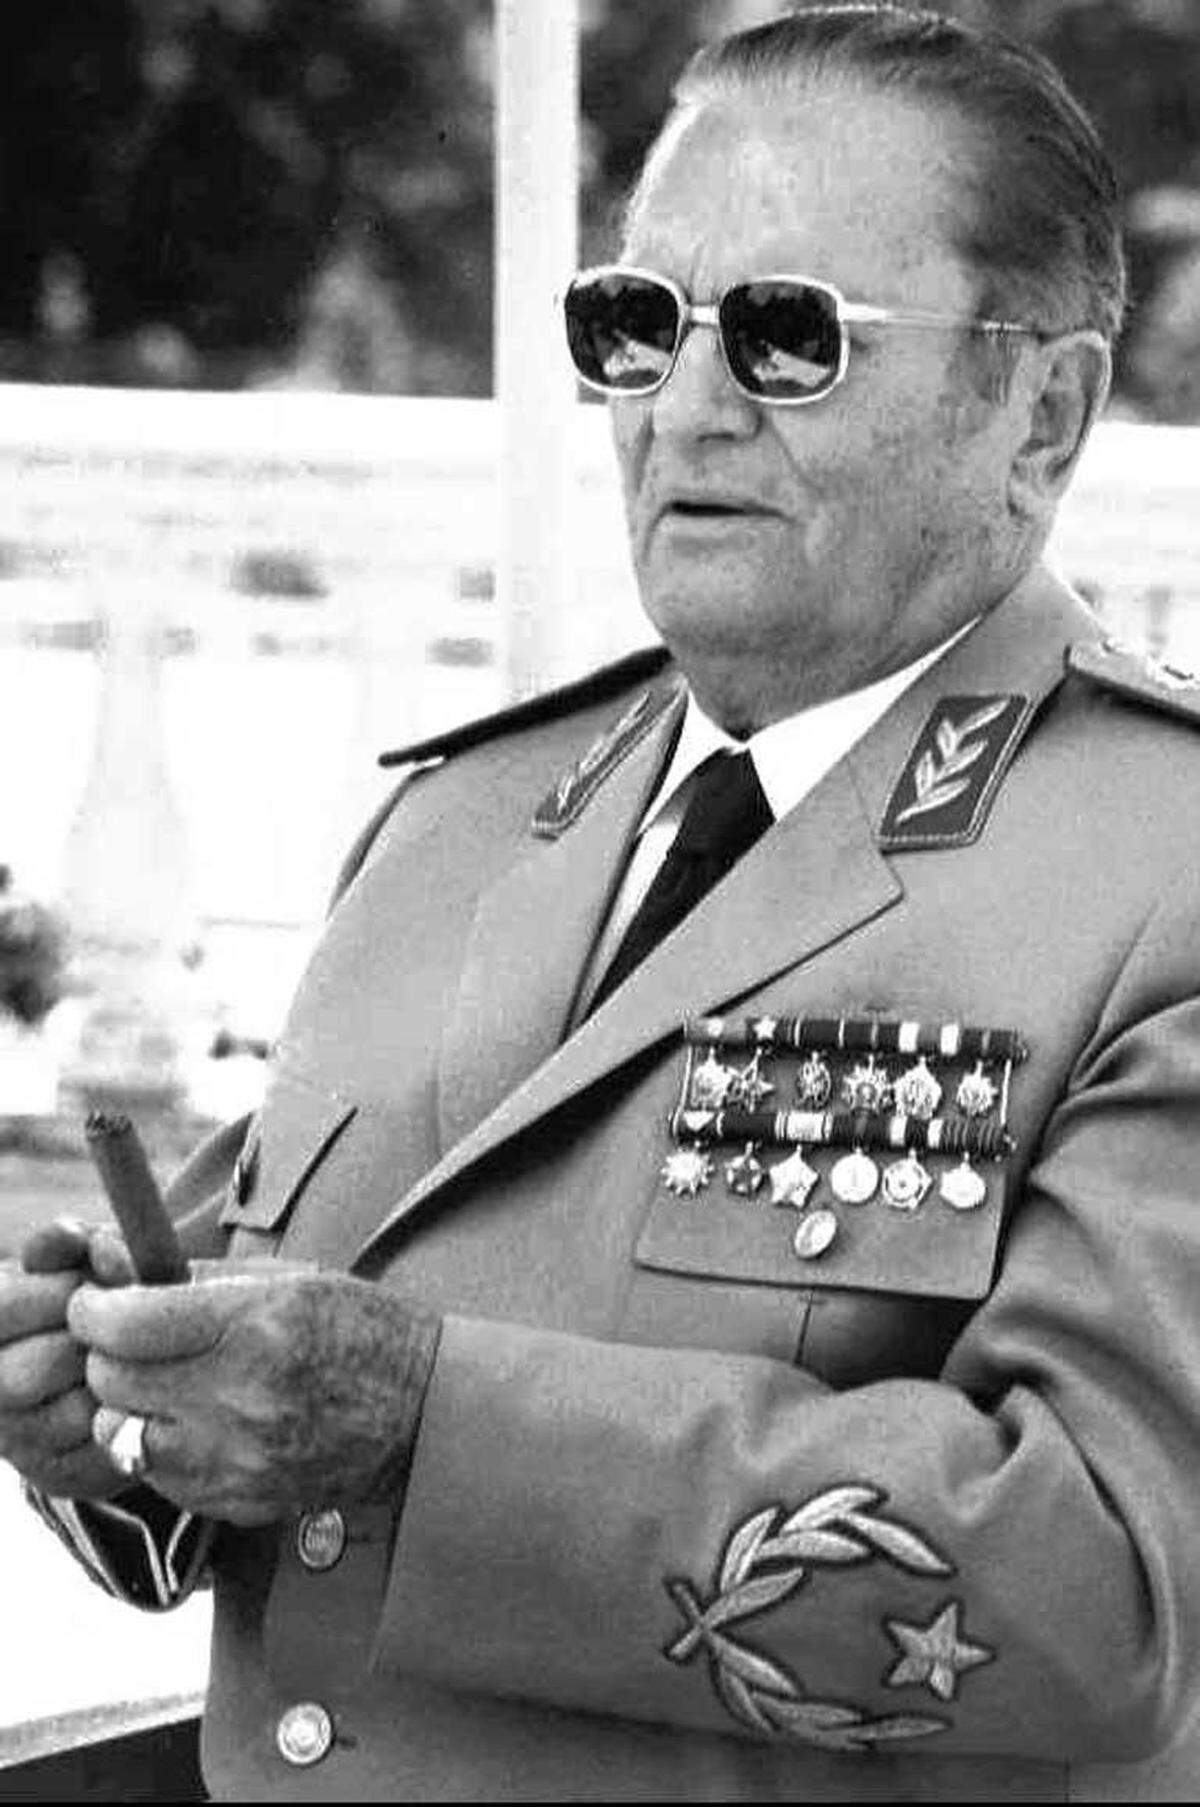 Am 4. Mai 1980 starb der langjährige jugoslawische Kommunisten- und Staatschef Josip Broz Tito. Titos Nachfolger waren nicht in der Lage sein Erbe erfolgreich zu verwalten. Im März 1981 kam es zu zu großen Studentenprotesten und blutigen Auseinandersetzungen mit der Polizei in Pristina (Kosovo).An die Stelle des Staatsgründers tritt ein Präsidium, dem Vertreter der sechs Republiken und zwei autonomen serbischen Provinzen (Kosovo und Vojvodina) angehören.